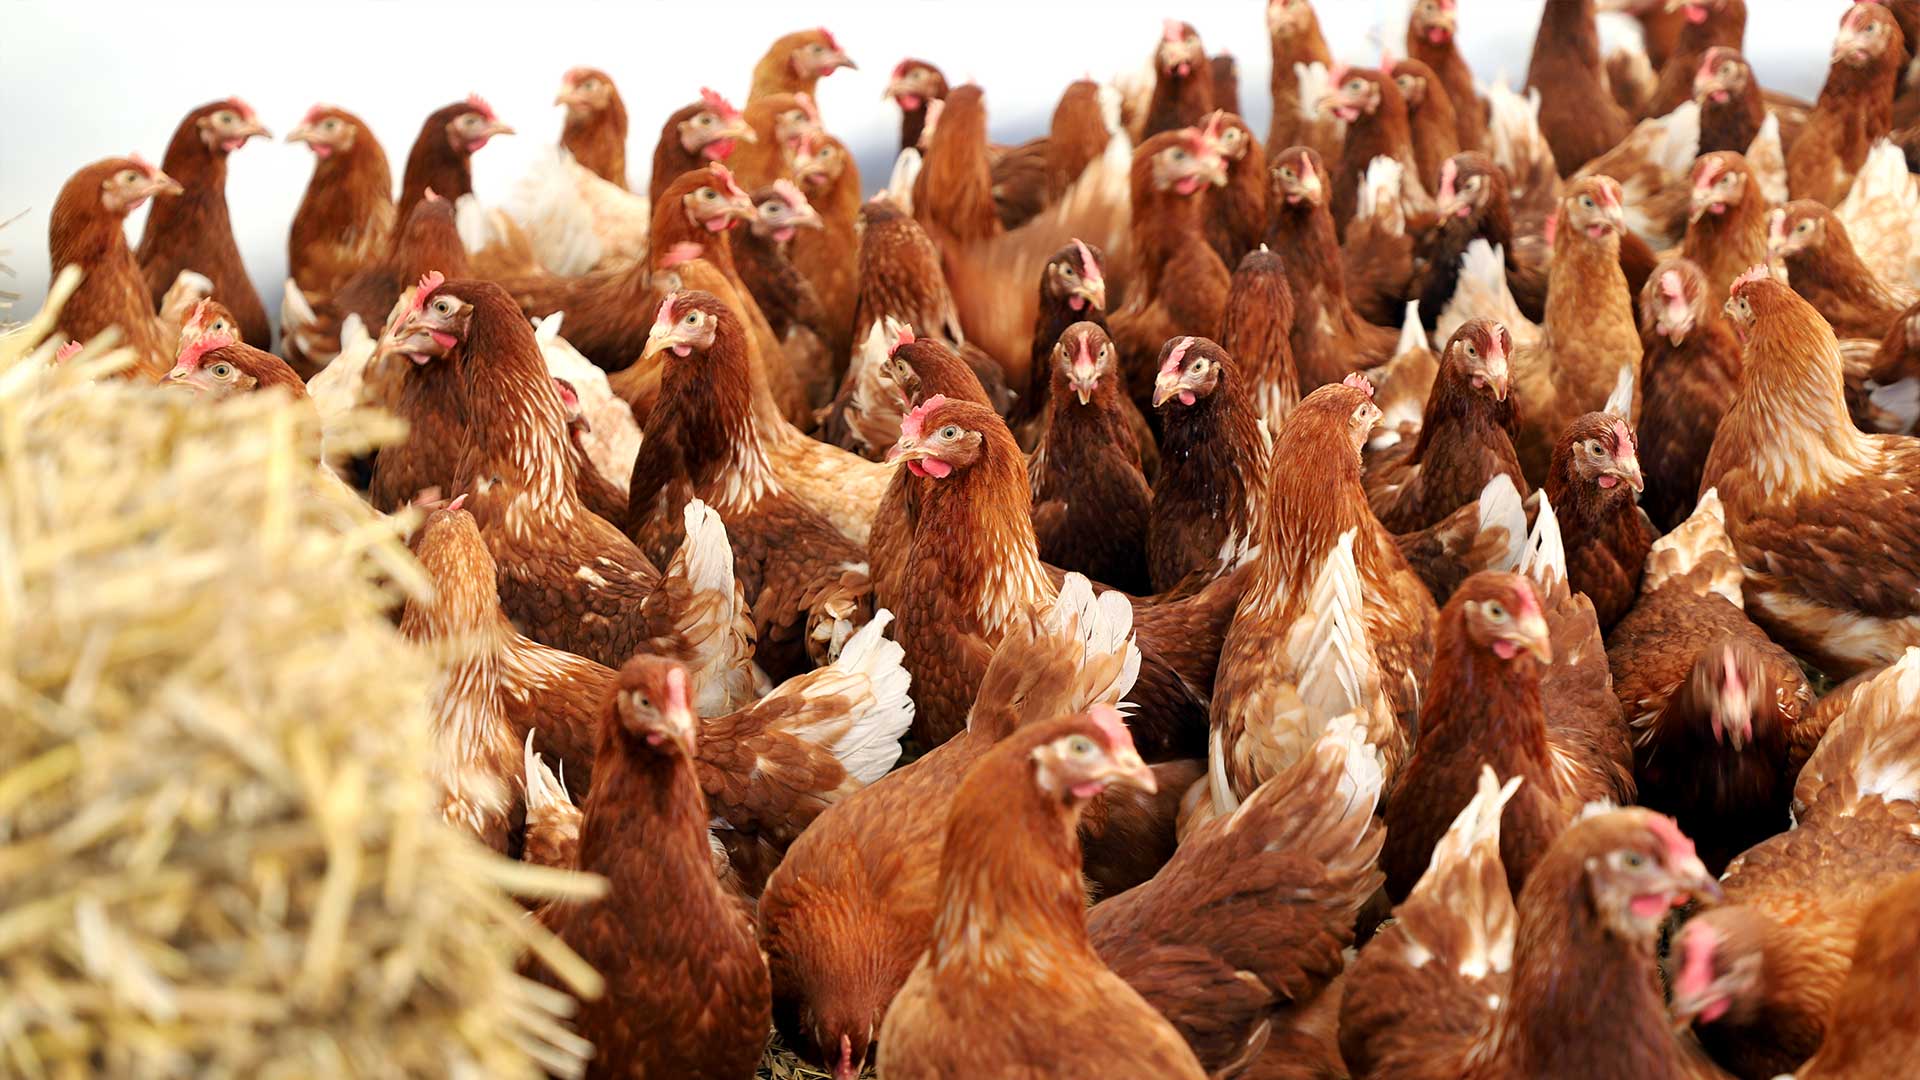 J'adopte des poules 400 poules à adopter - Réduire ses déchets alimentaires avec des poules